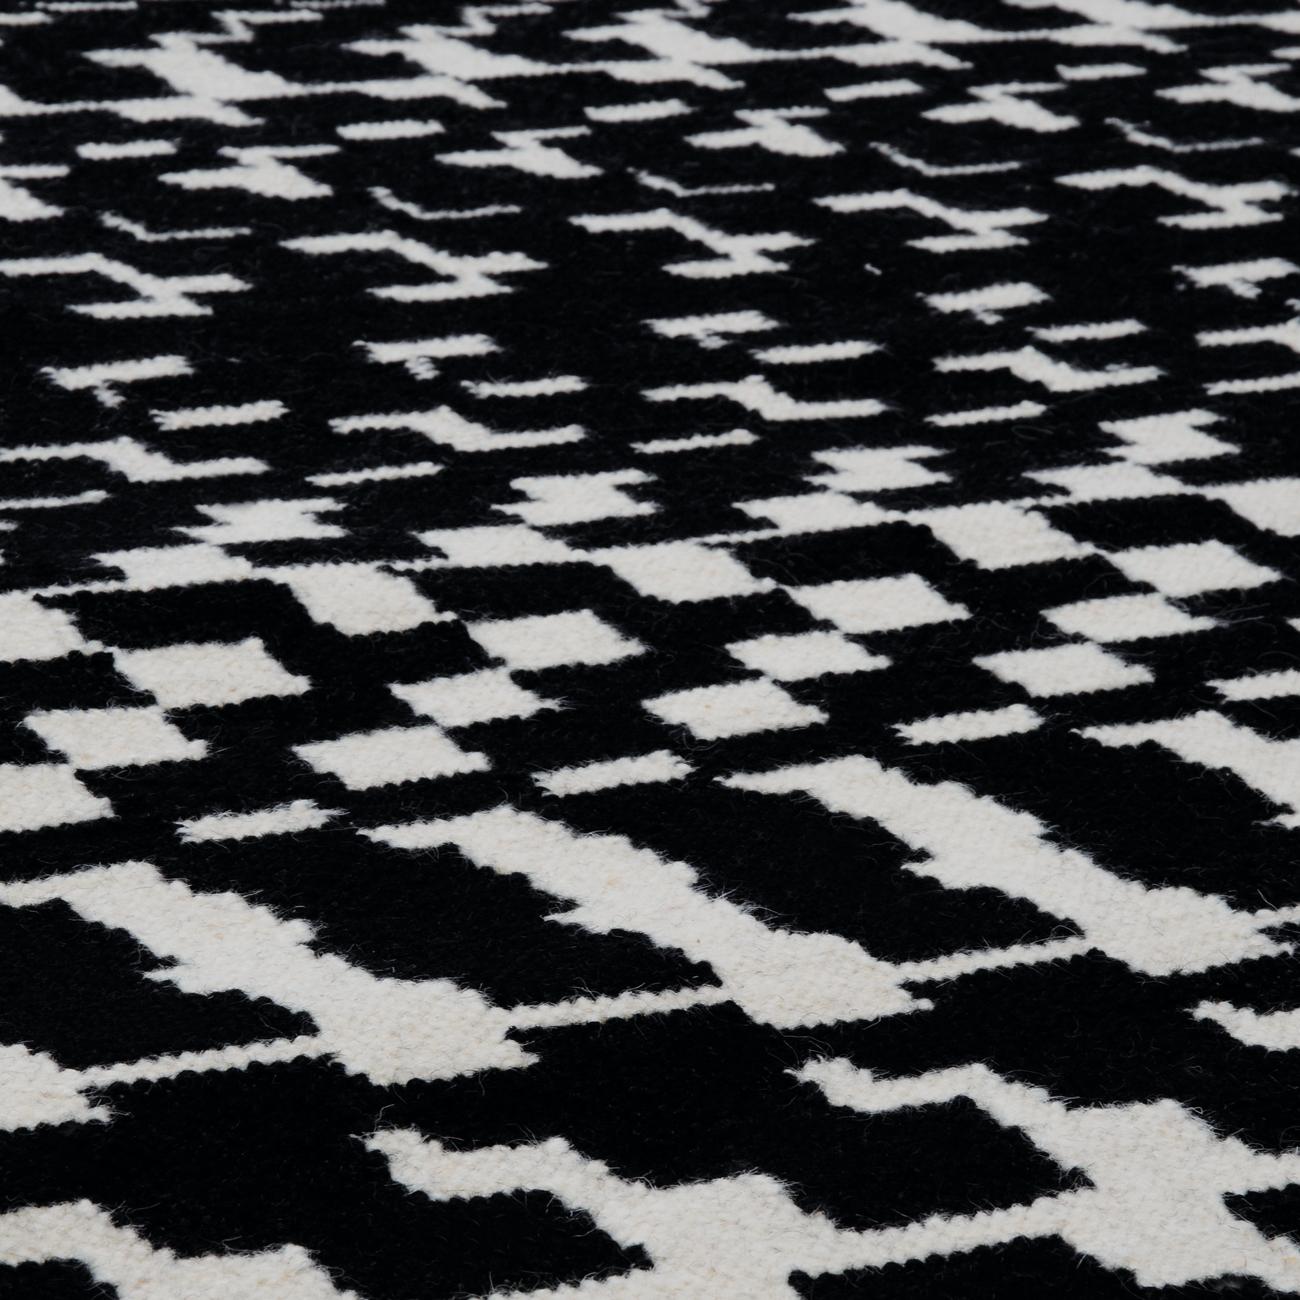 Hand-Woven Fuoritempo - Black White - Design Kilim Rug Paolo Giordano Wool Carpet Cotton For Sale